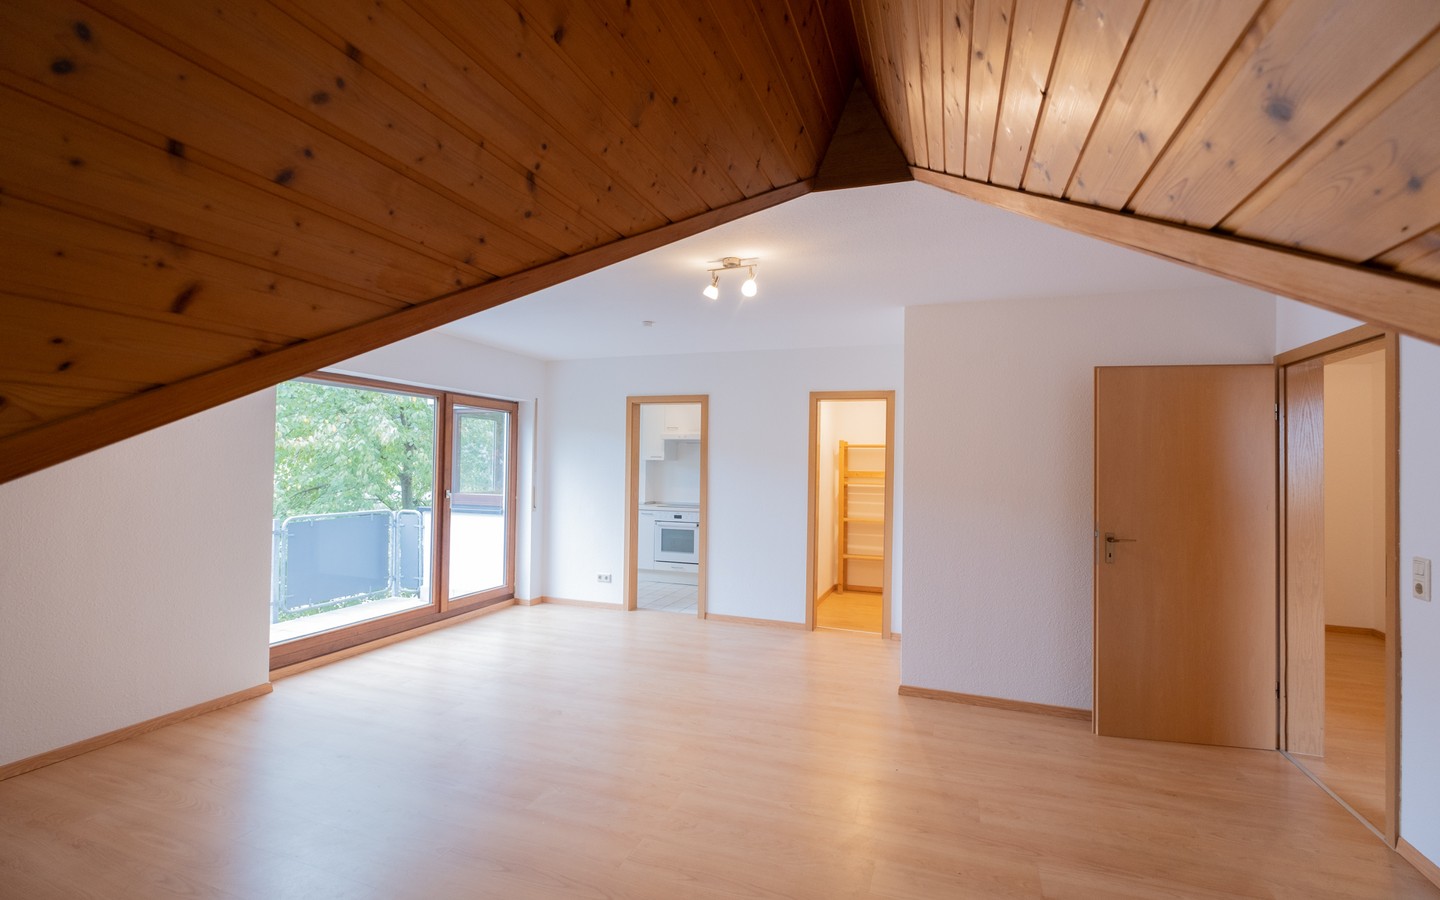 Zimmer 1 - Neues Eigenheim oder neue Kapitalanlage: 2-Zimmer-Dachwohnung in Leimen - sofort bezugsfrei!